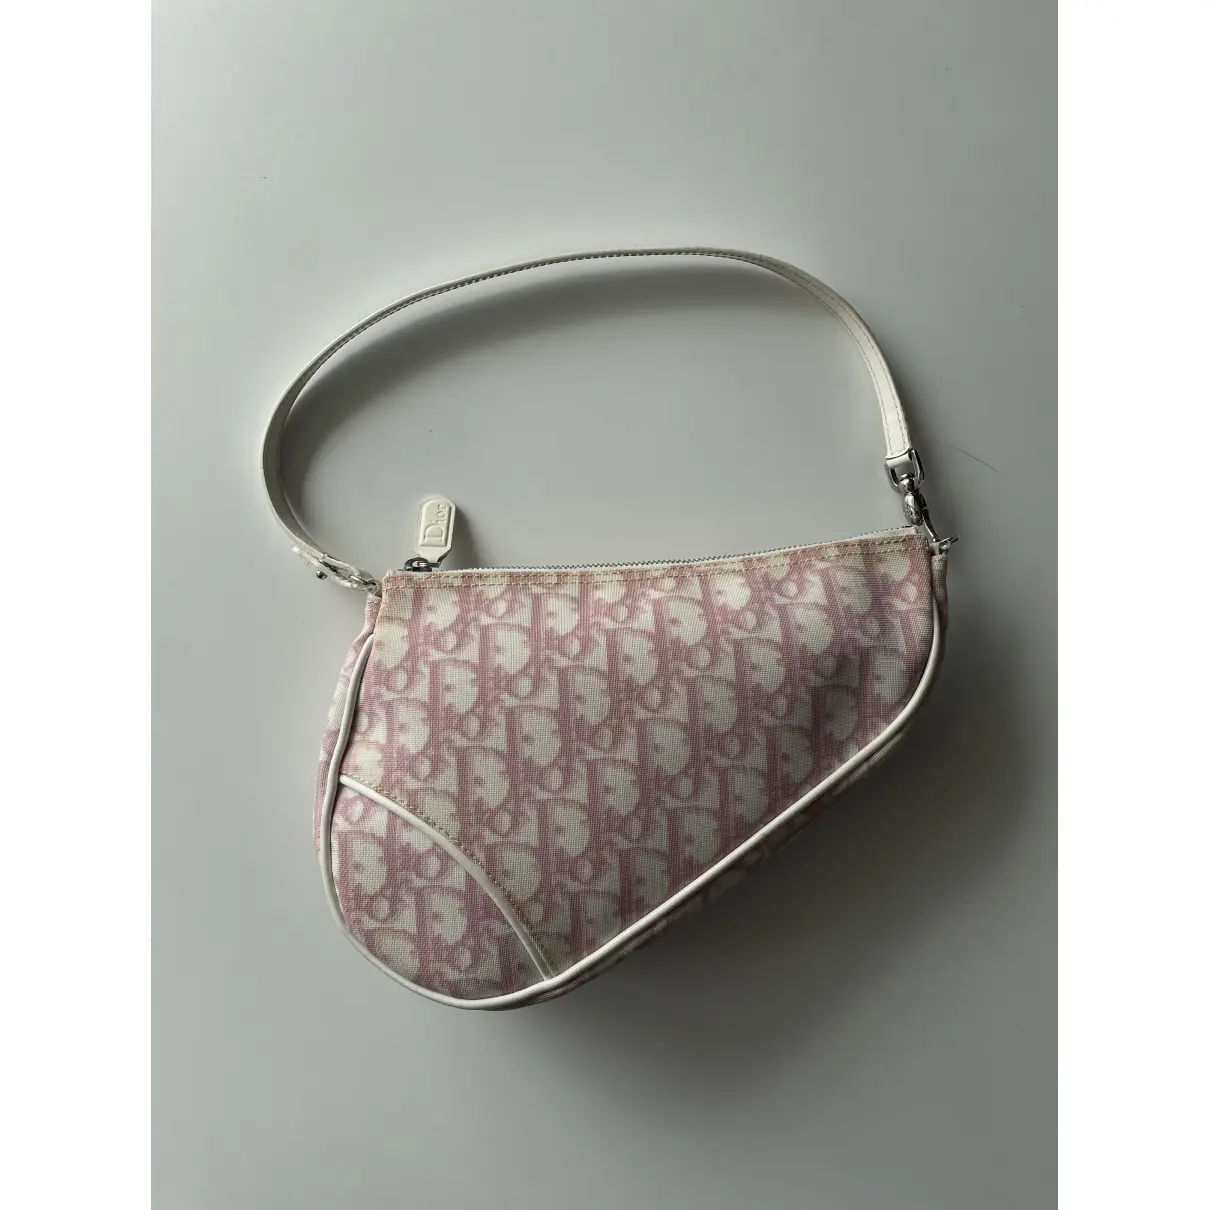 Buy Dior Saddle cloth clutch bag online - Vintage